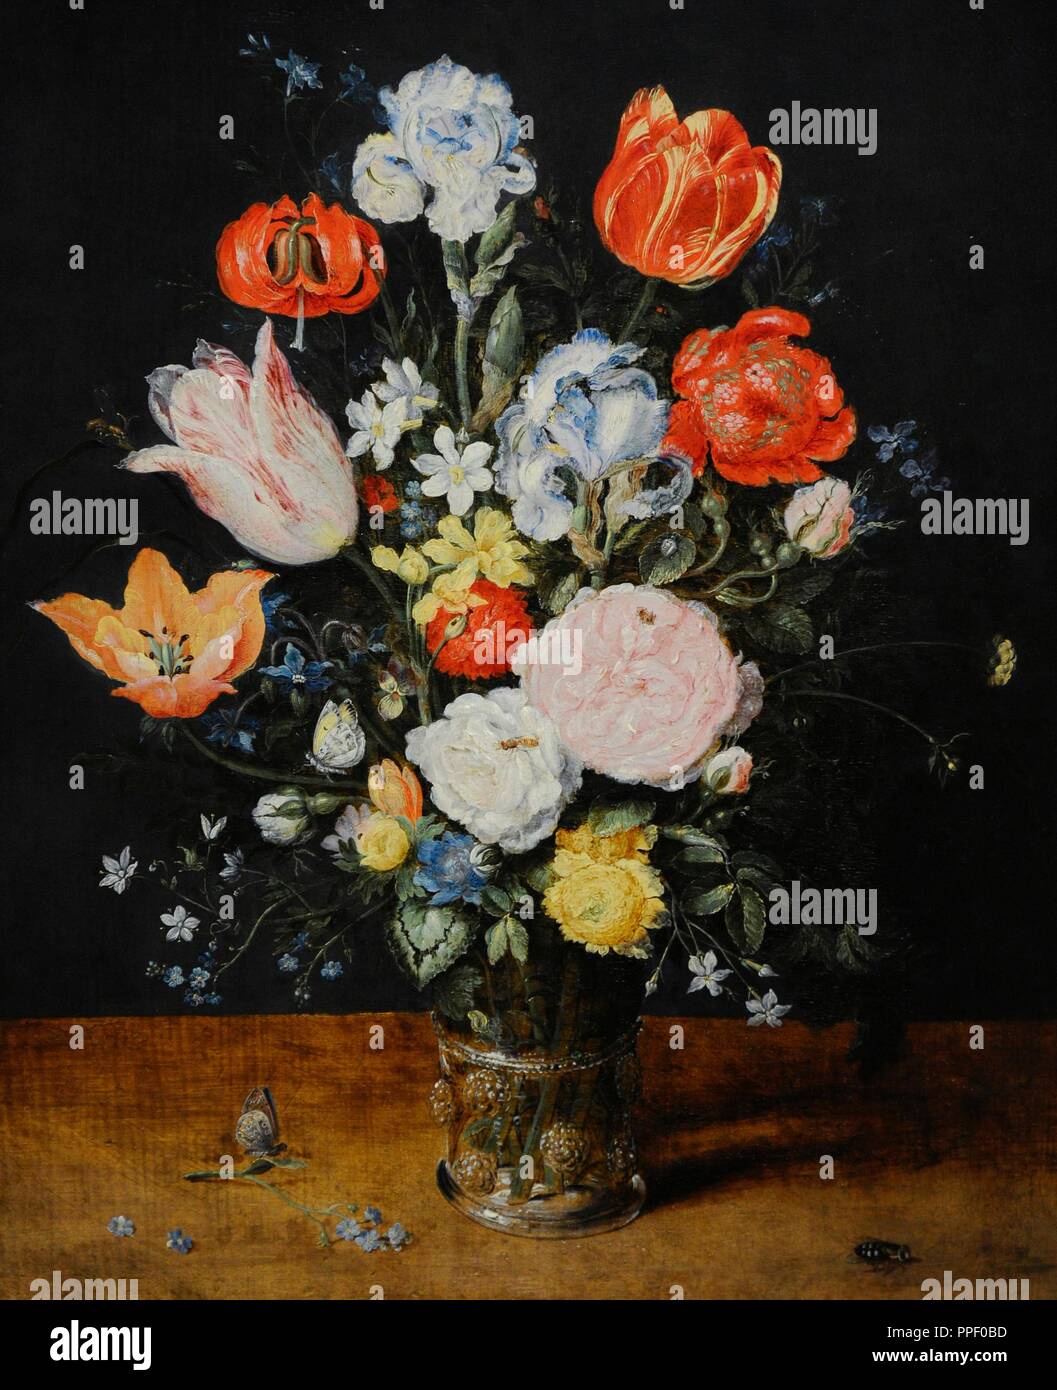 Jan Brueghel l'ancien (1568-1625). Peintre flamand. Bouquet de fleurs dans un bécher en verre, après 1608. Musée Wallraf-Richartz. Cologne. L'Allemagne. Banque D'Images